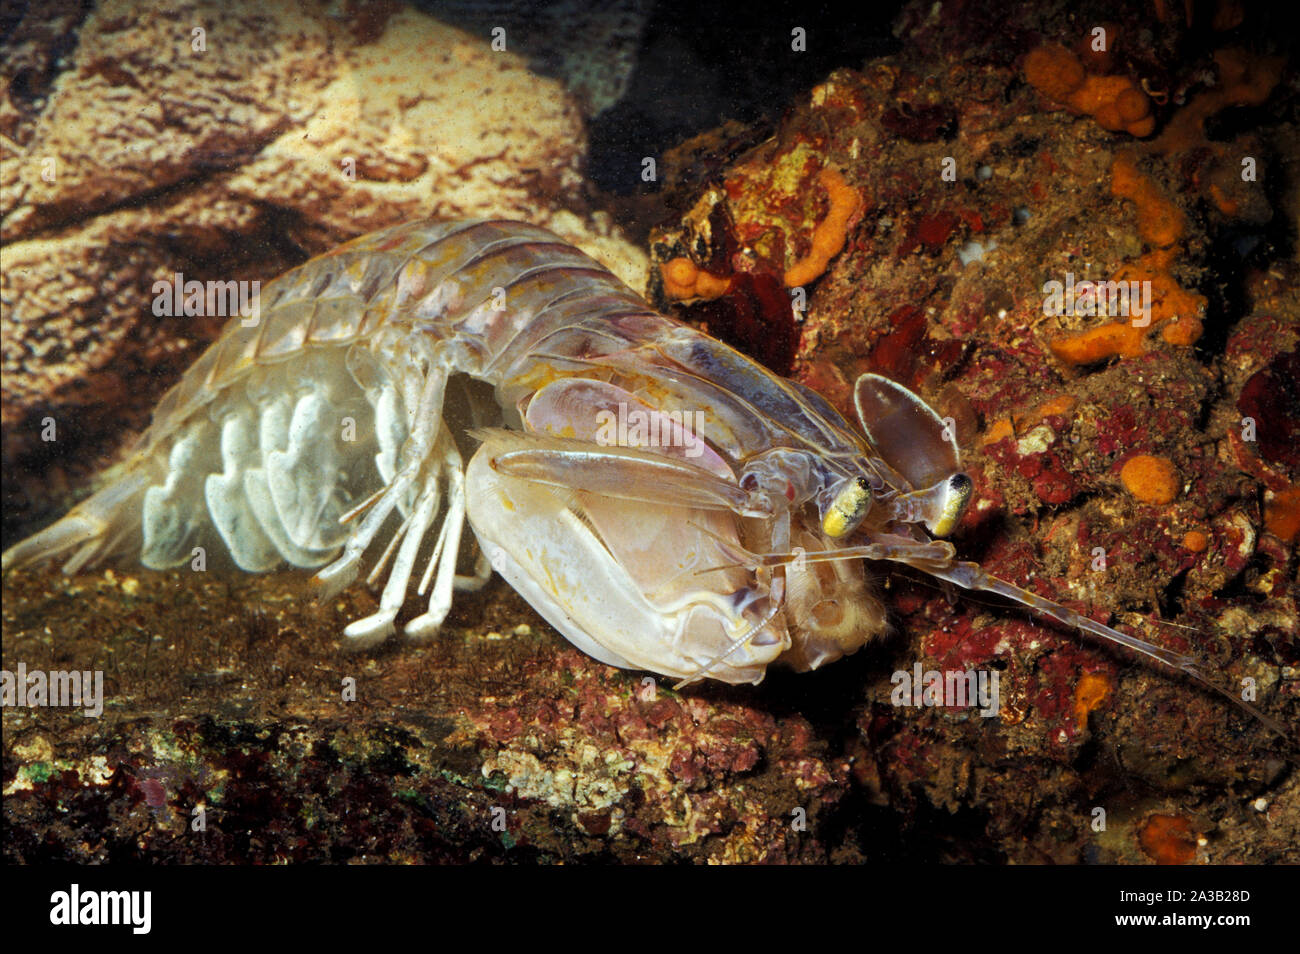 Mediterranean mantis shrimp, Squilla mantis, Squillidae, Mediterranean Sea Stock Photo